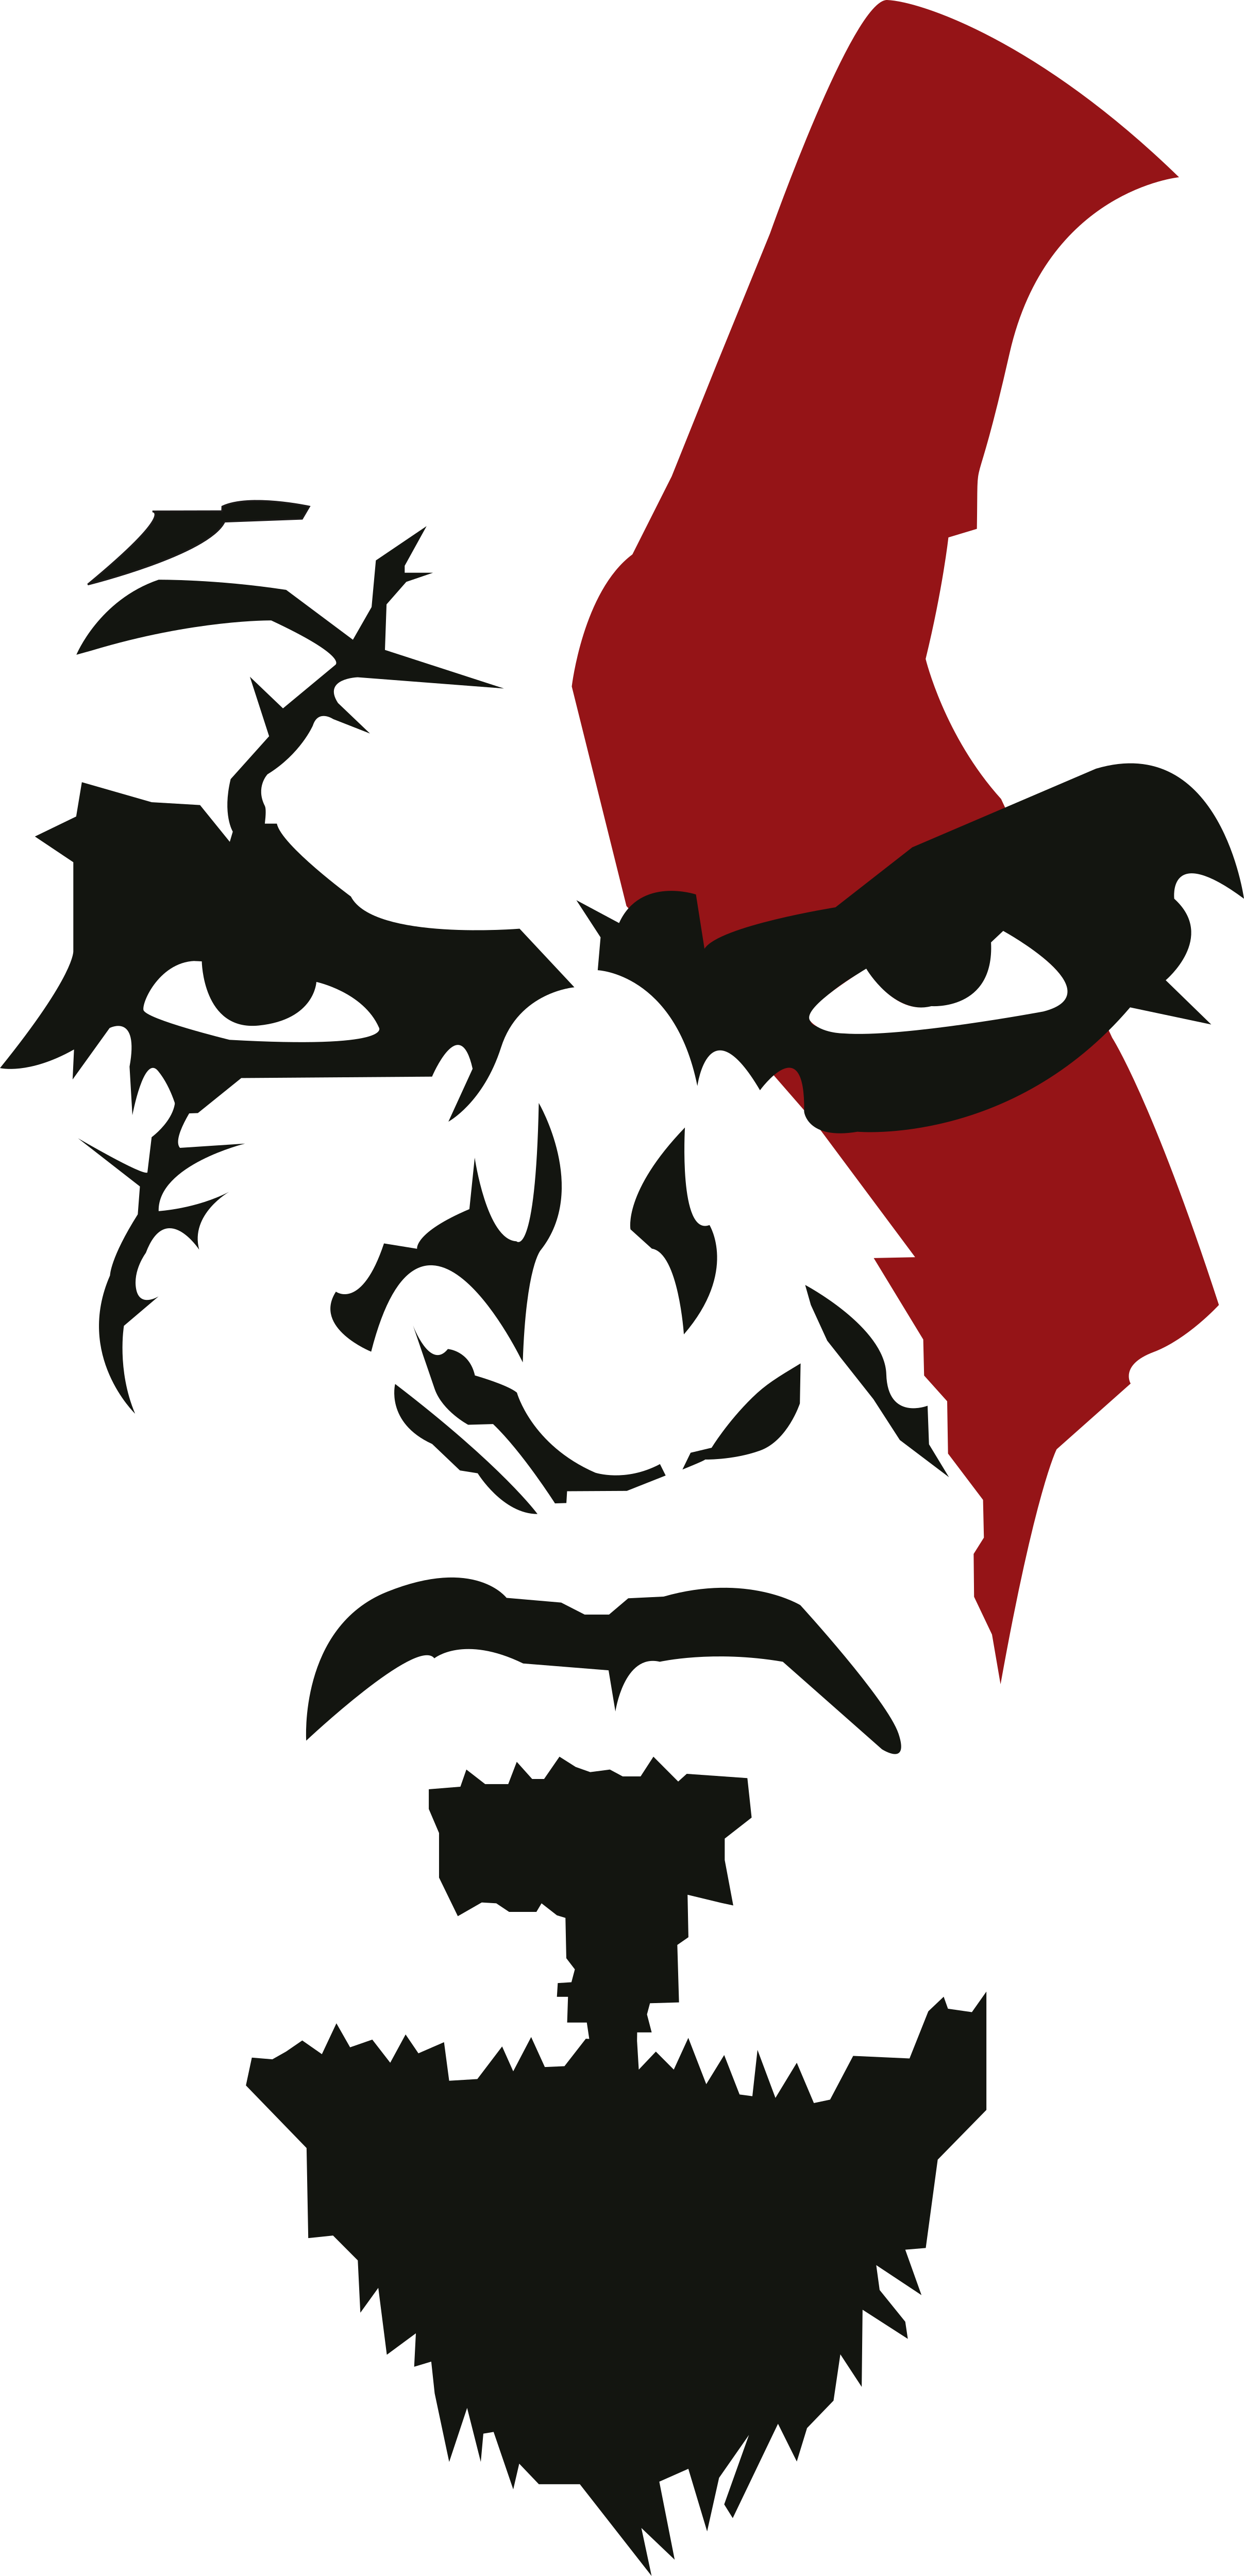 God Of War Logo Png For Kids - God Of War 3 Logo Png - Free Transparent PNG  Download - PNGkey